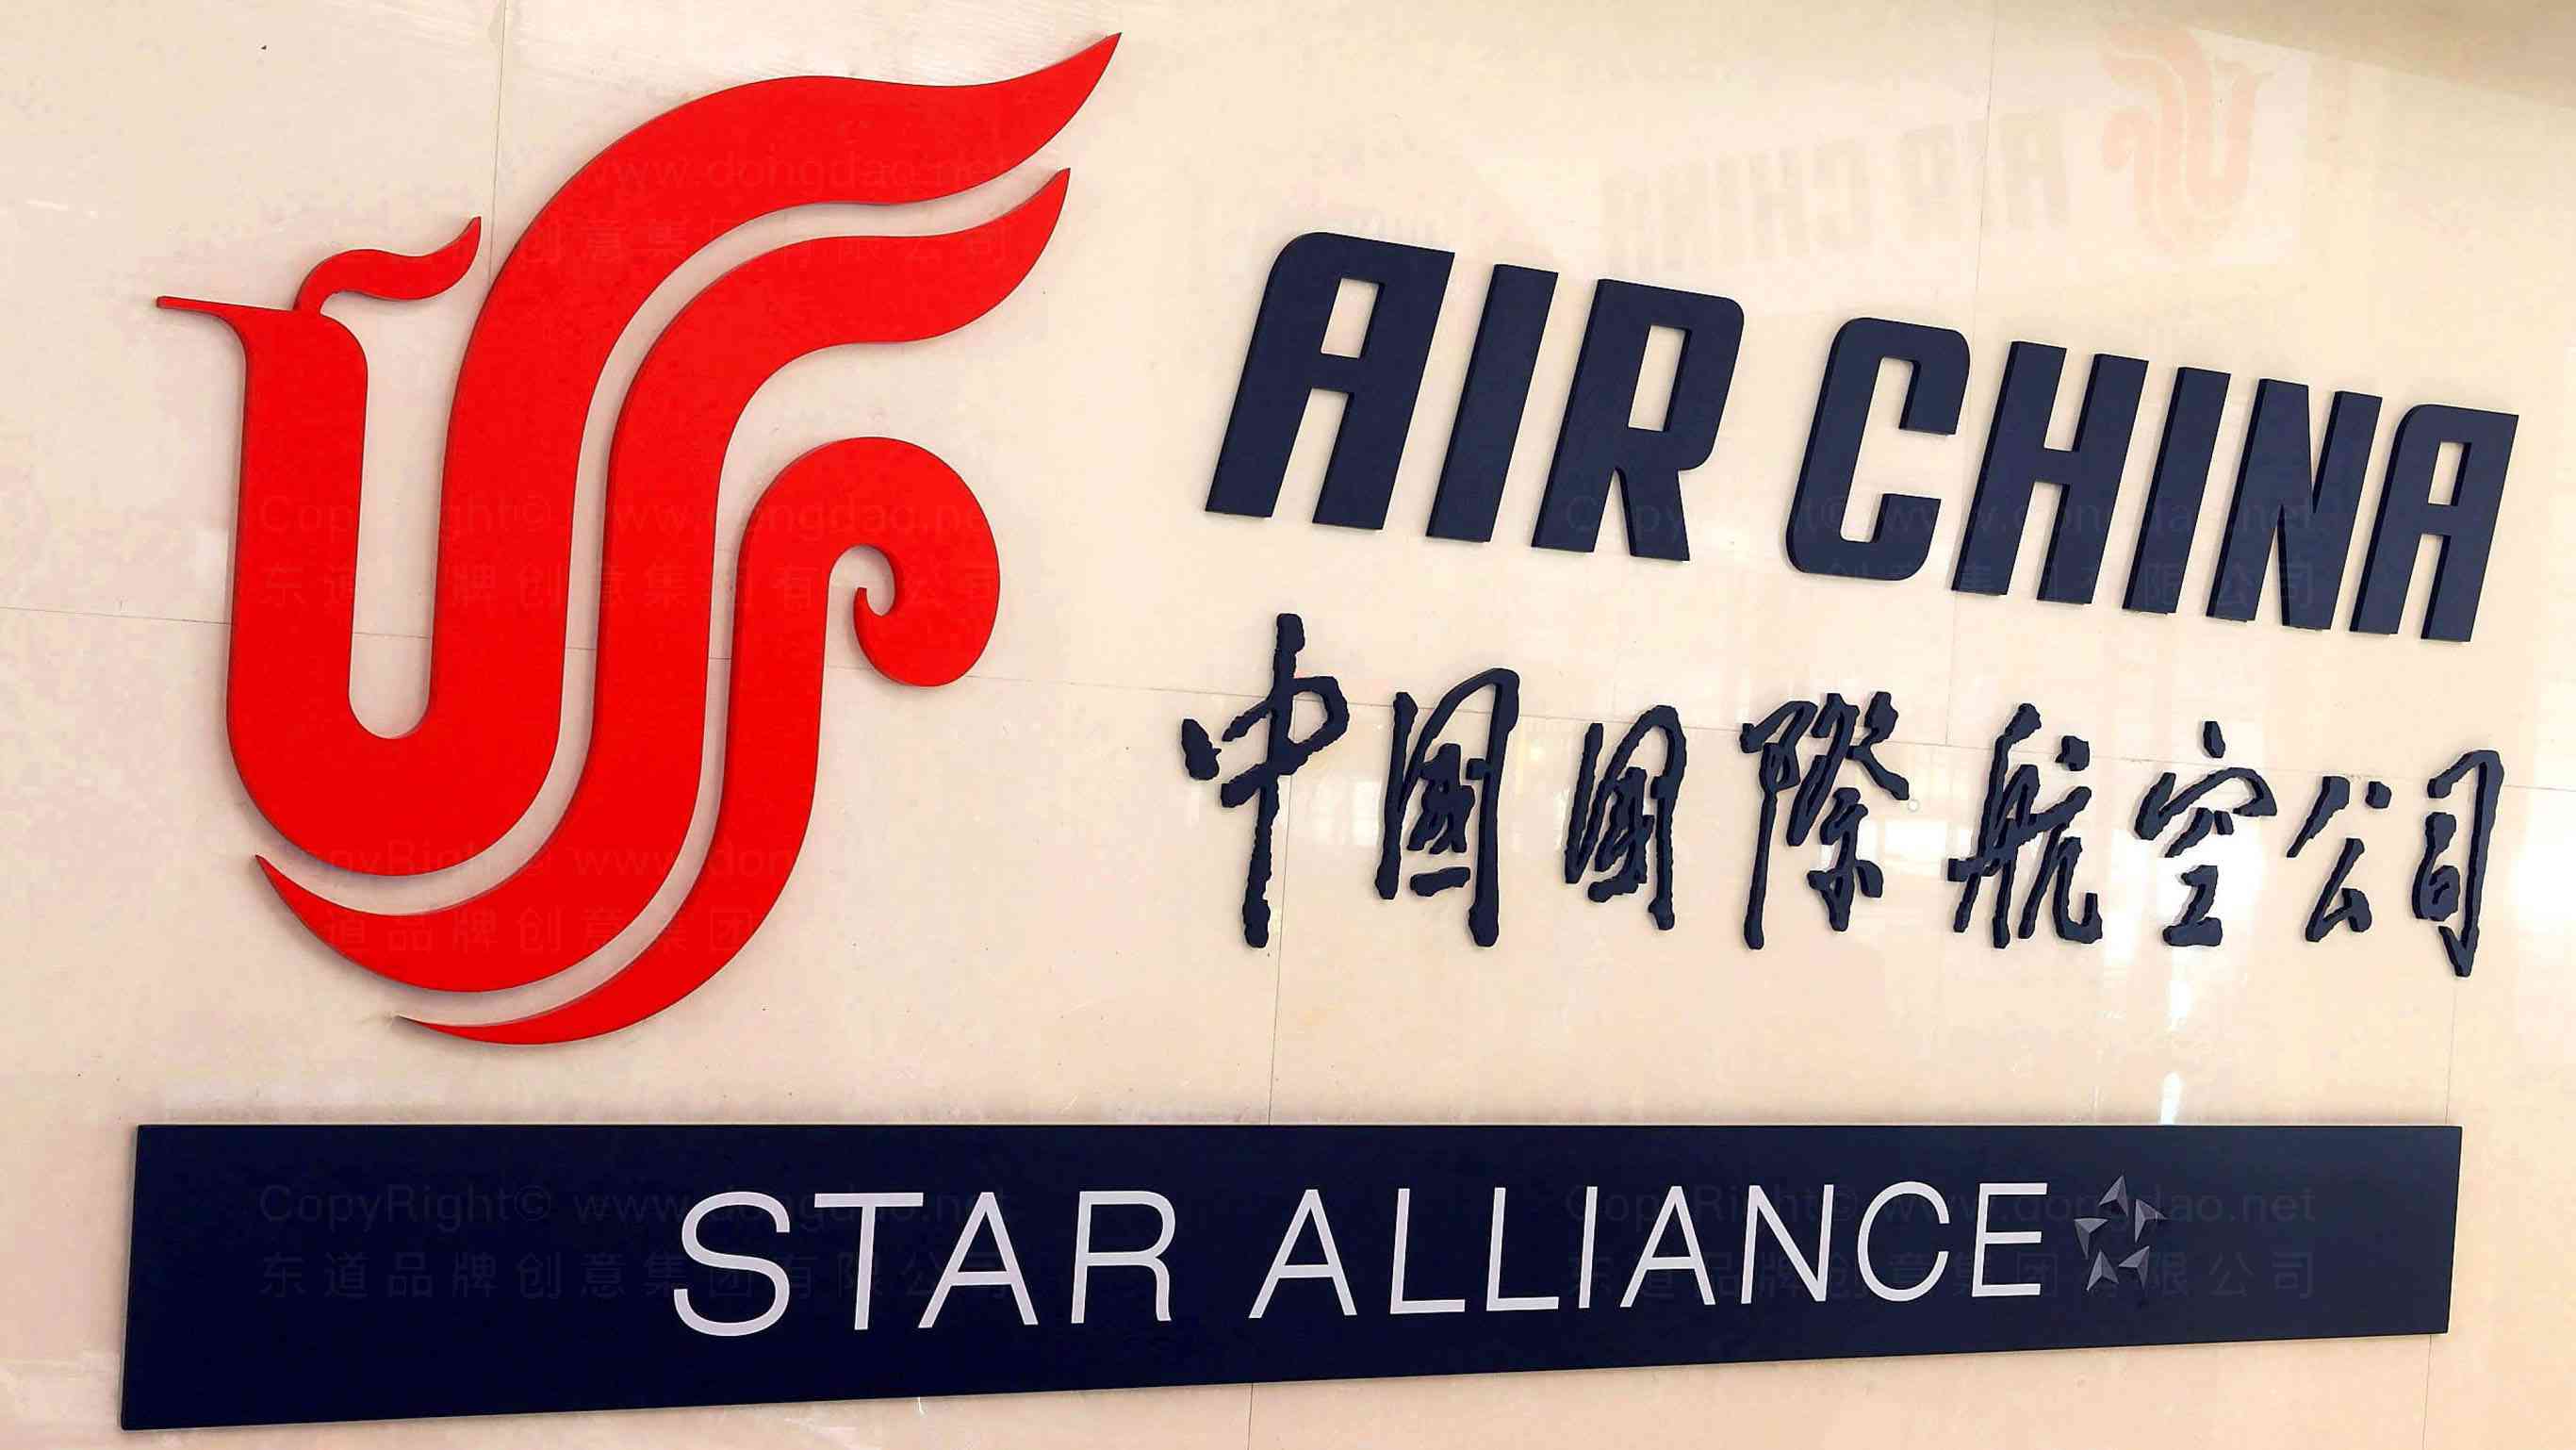 中国国航航空公司产品设计图片素材_东道品牌创意设计